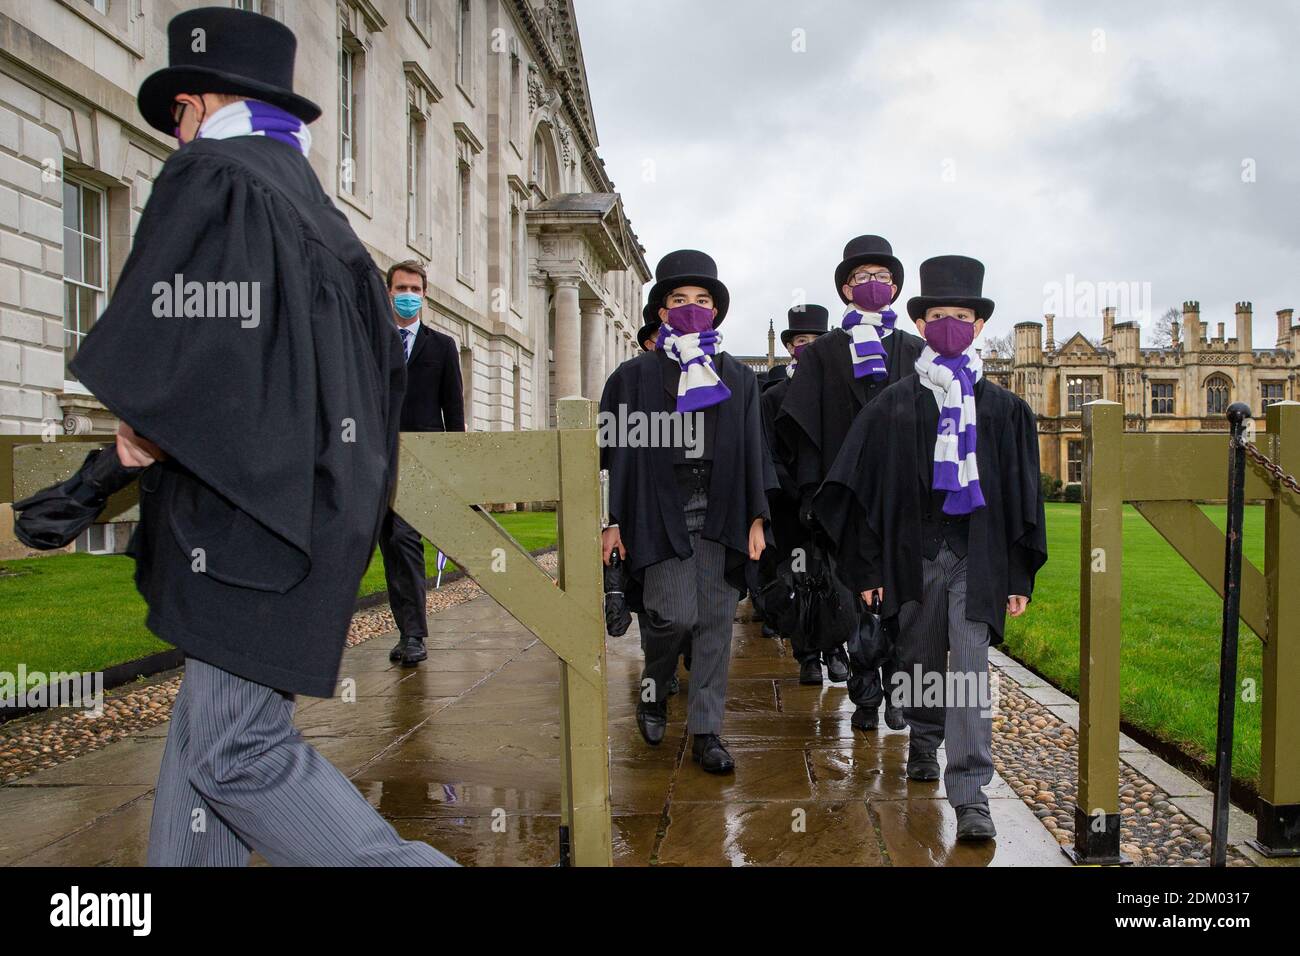 Bild vom 12. Dezember 2020 zeigt den King's Choir auf dem Weg in die King's College Chapel an der Cambridge University am Samstagnachmittag, um den weltberühmten Weihnachtslieddienst im Fernsehen aufzunehmen, der in diesem Jahr keine Gemeinde hatte. Die Choristen marschierten in die King's College Chapel an der Universität Cambridge, um den weltbekannten Weihnachtslieddienst zu dokumentieren, der in diesem Jahr zum ersten Mal in seiner Geschichte keine Gemeinde hatte. Die Jungen wurden in Masken gesehen, als sie gestern Nachmittag (Sa) in die Kapelle eingingen, um das Festival der neun Lektionen und Weihnachtslieder aufzunehmen. Stockfoto